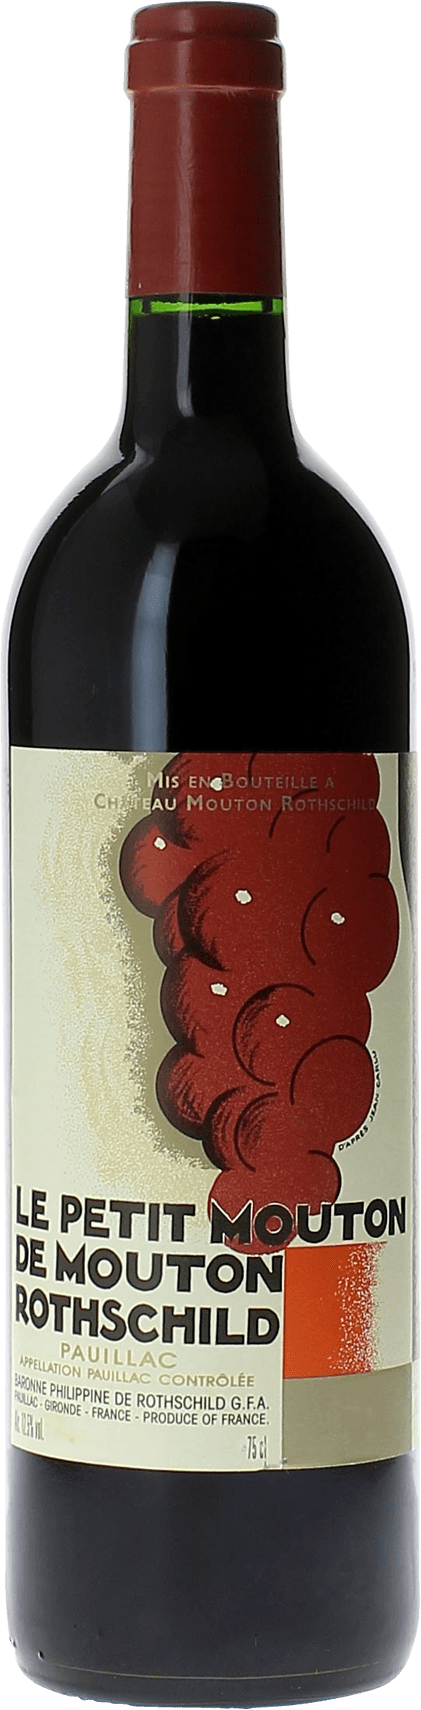 Petit mouton 2020 2nd vin de Mouton Rothschild Pauillac, Bordeaux rouge